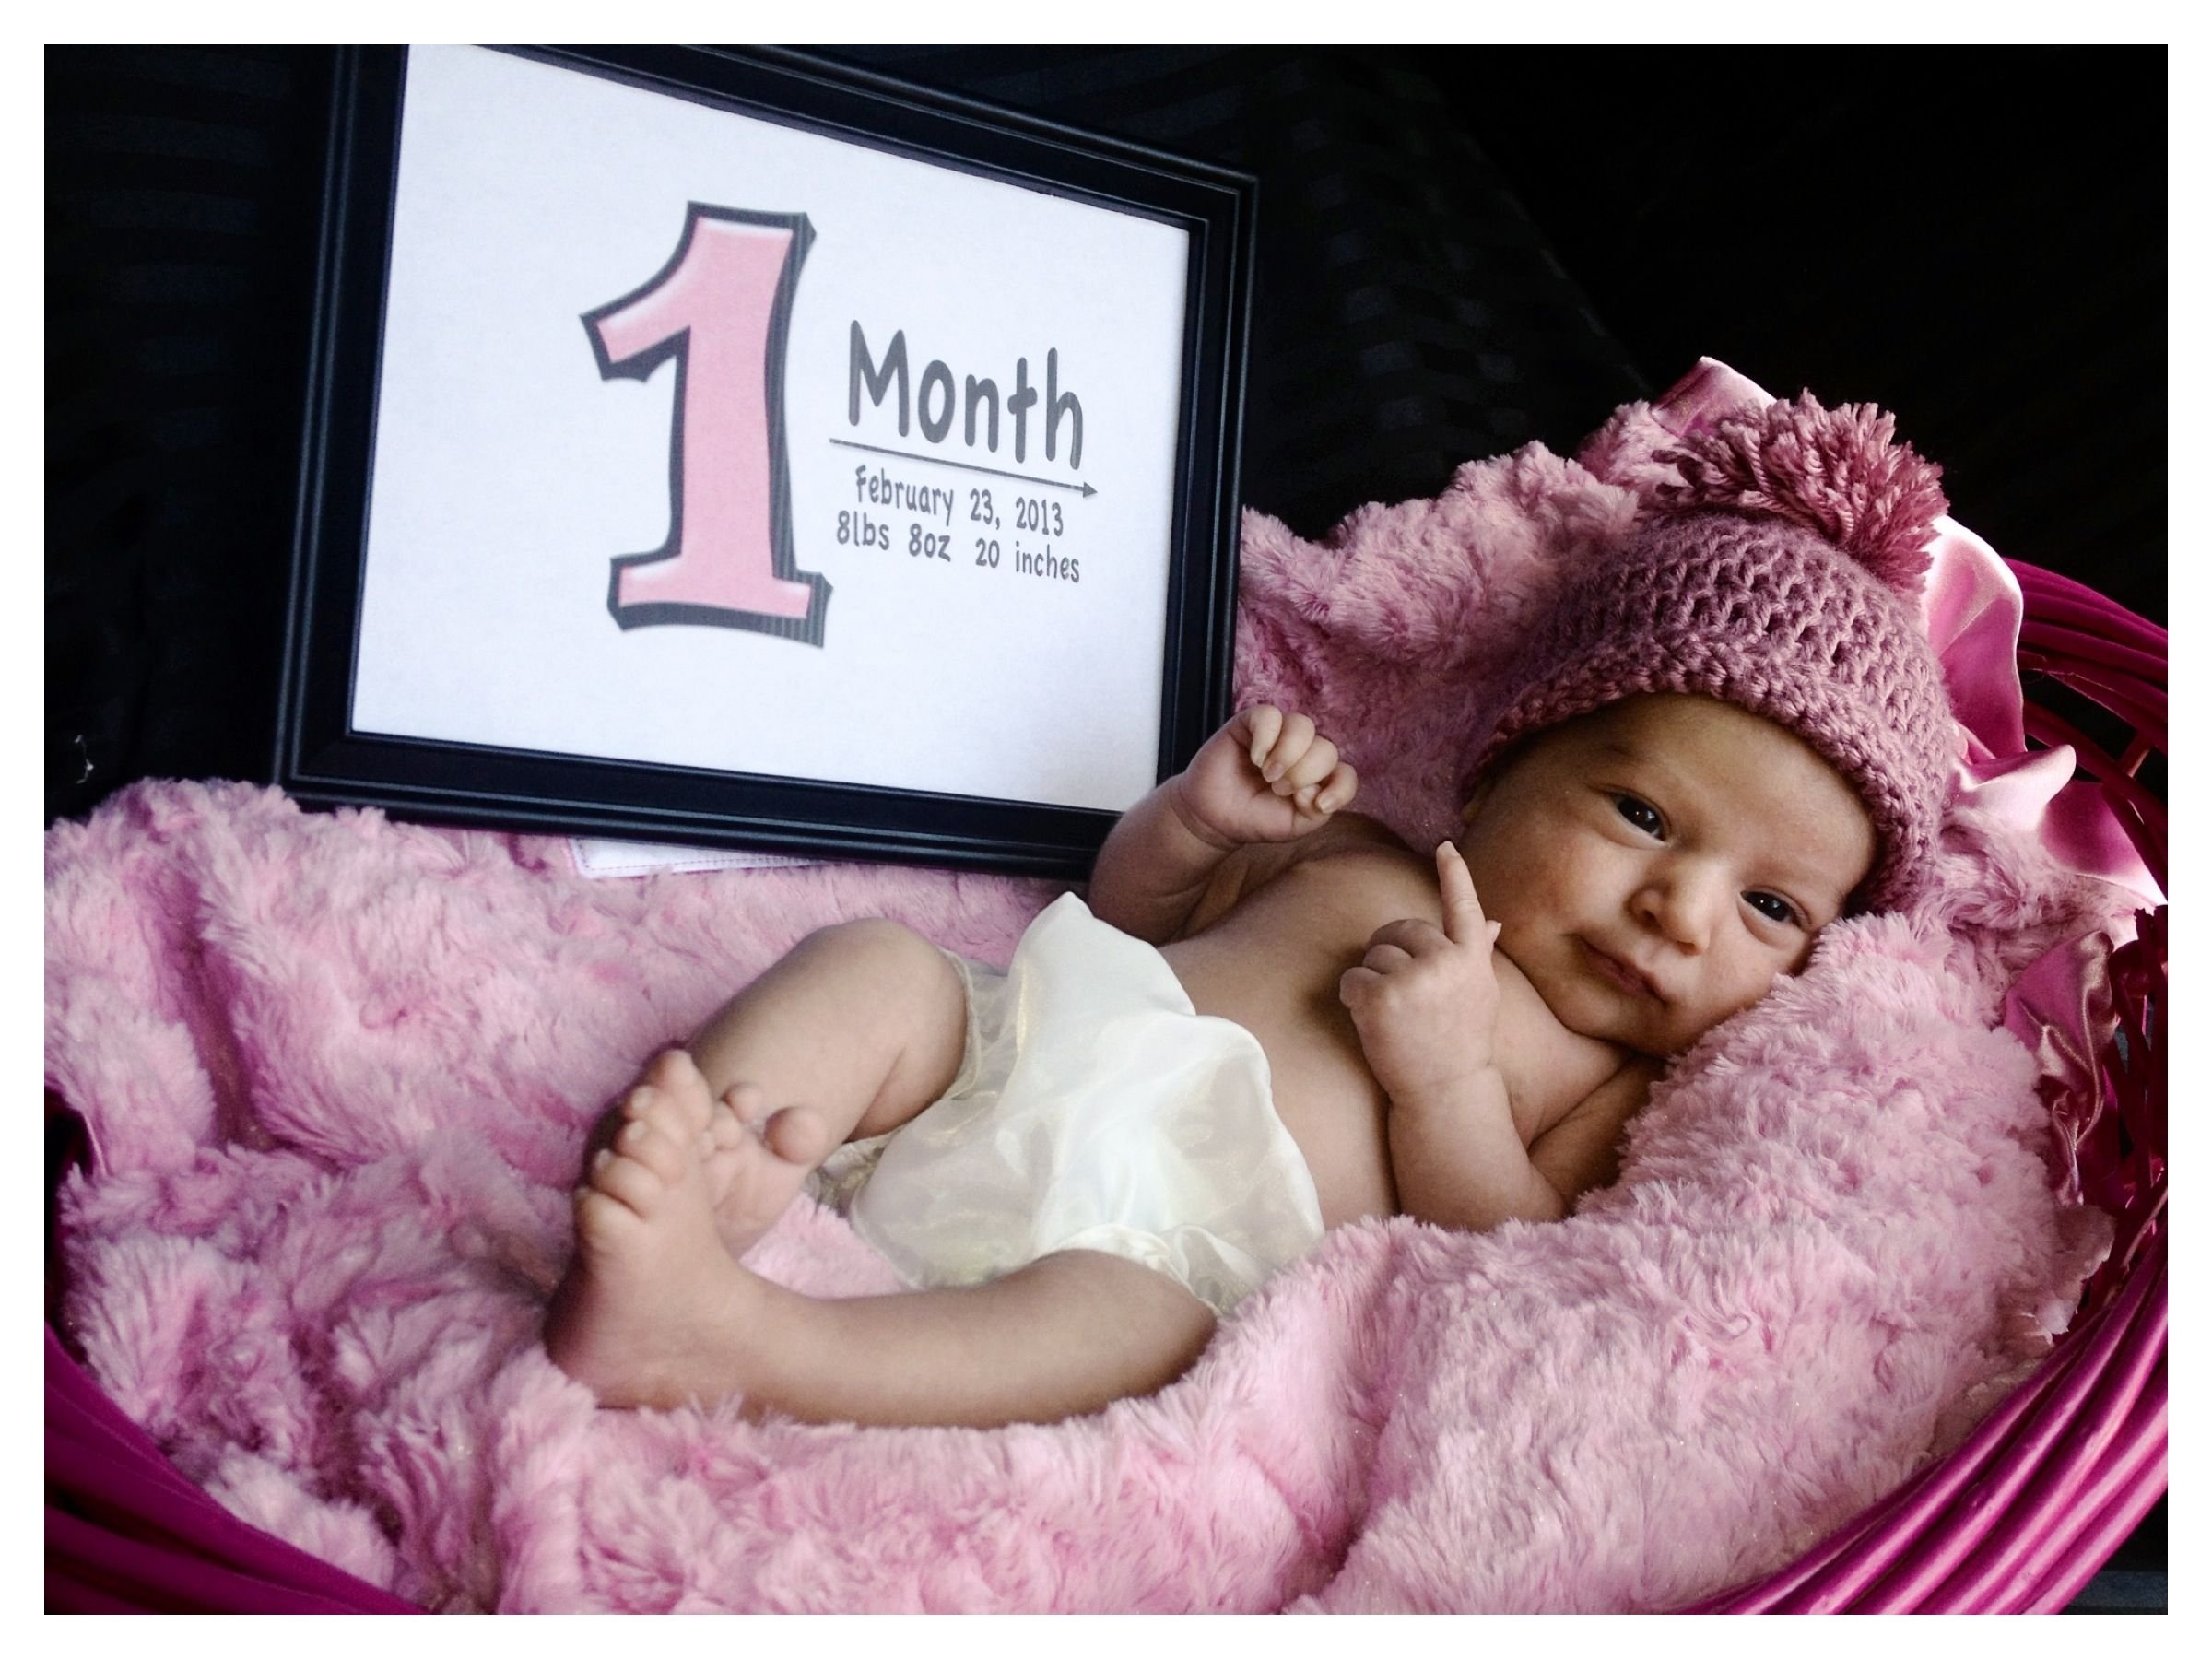 С 1 месяцем дочки. Открытка 1 месяц девочке. Открытка доченьке 1 месяц. Поздравление с 1 месяцем. С месяцем рождения девочке.